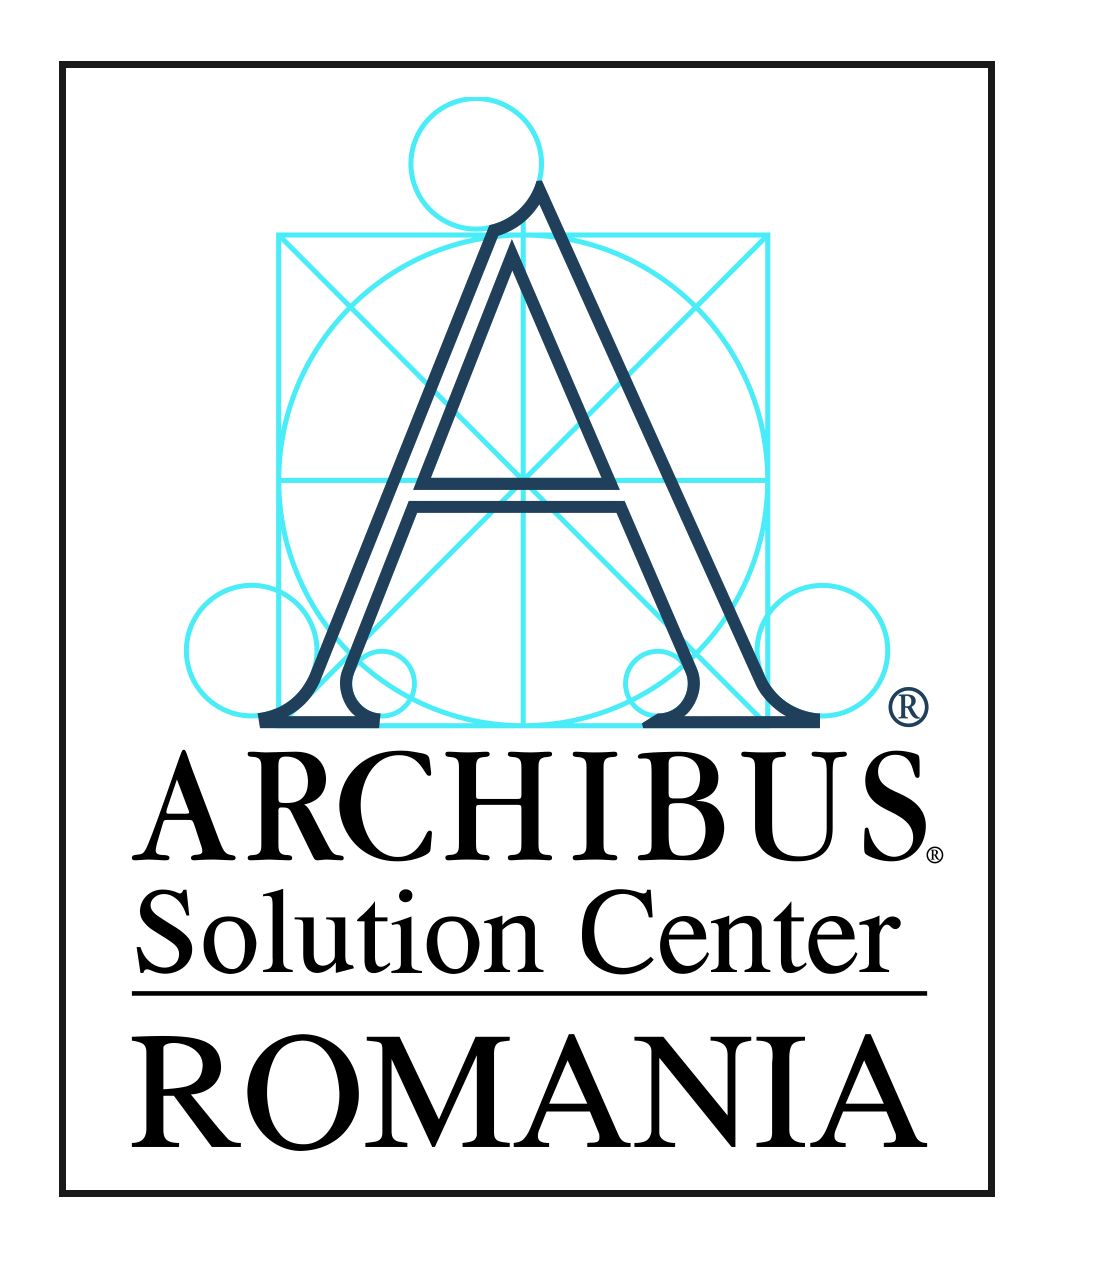 ARCHIBUS Solution Center - Romania